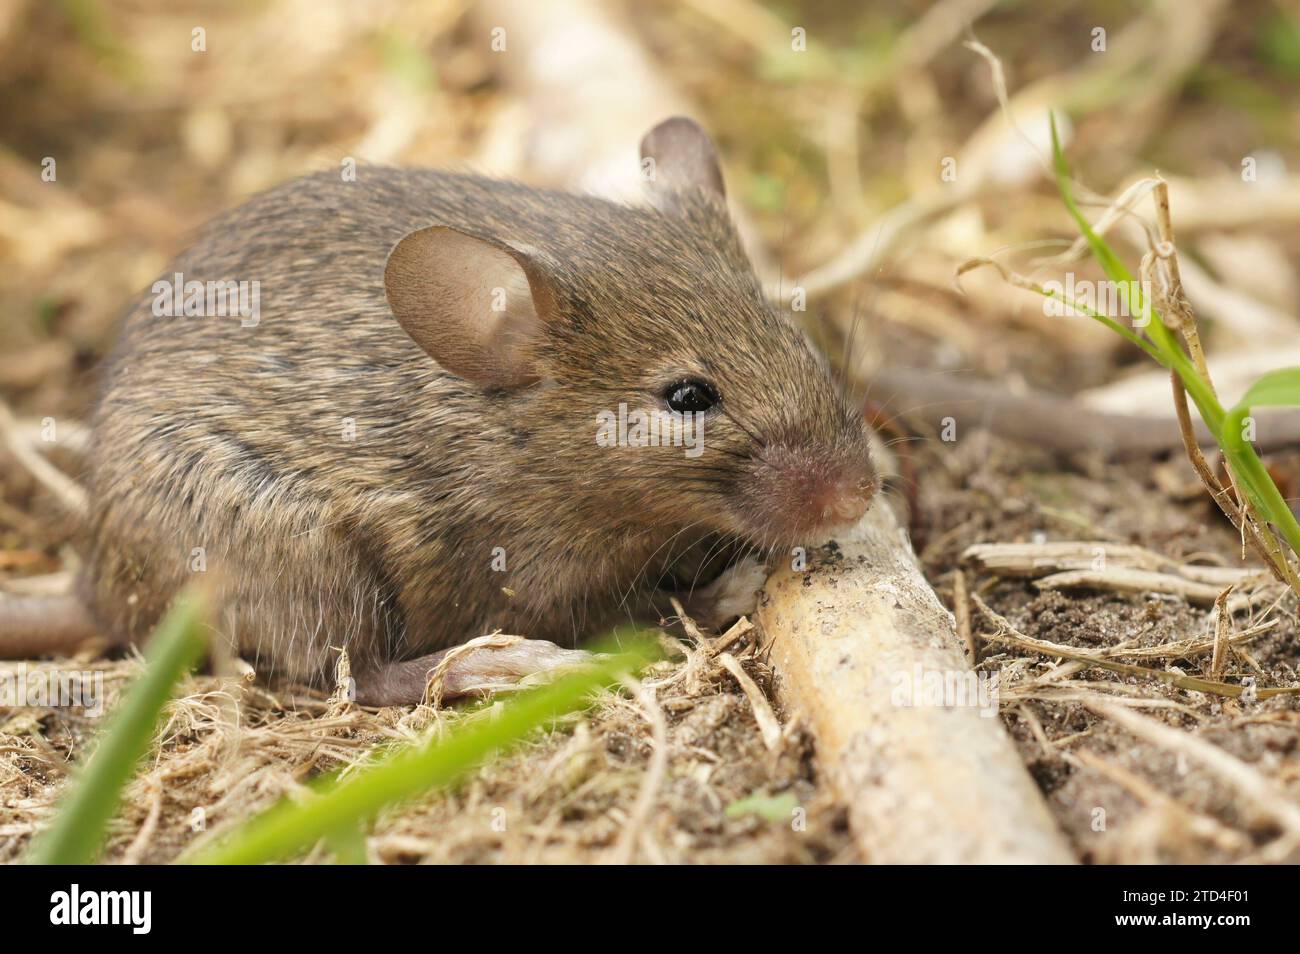 Gros plan naturel sur une jeune souris commune européenne molletonnée juvénile Mus musculus Banque D'Images